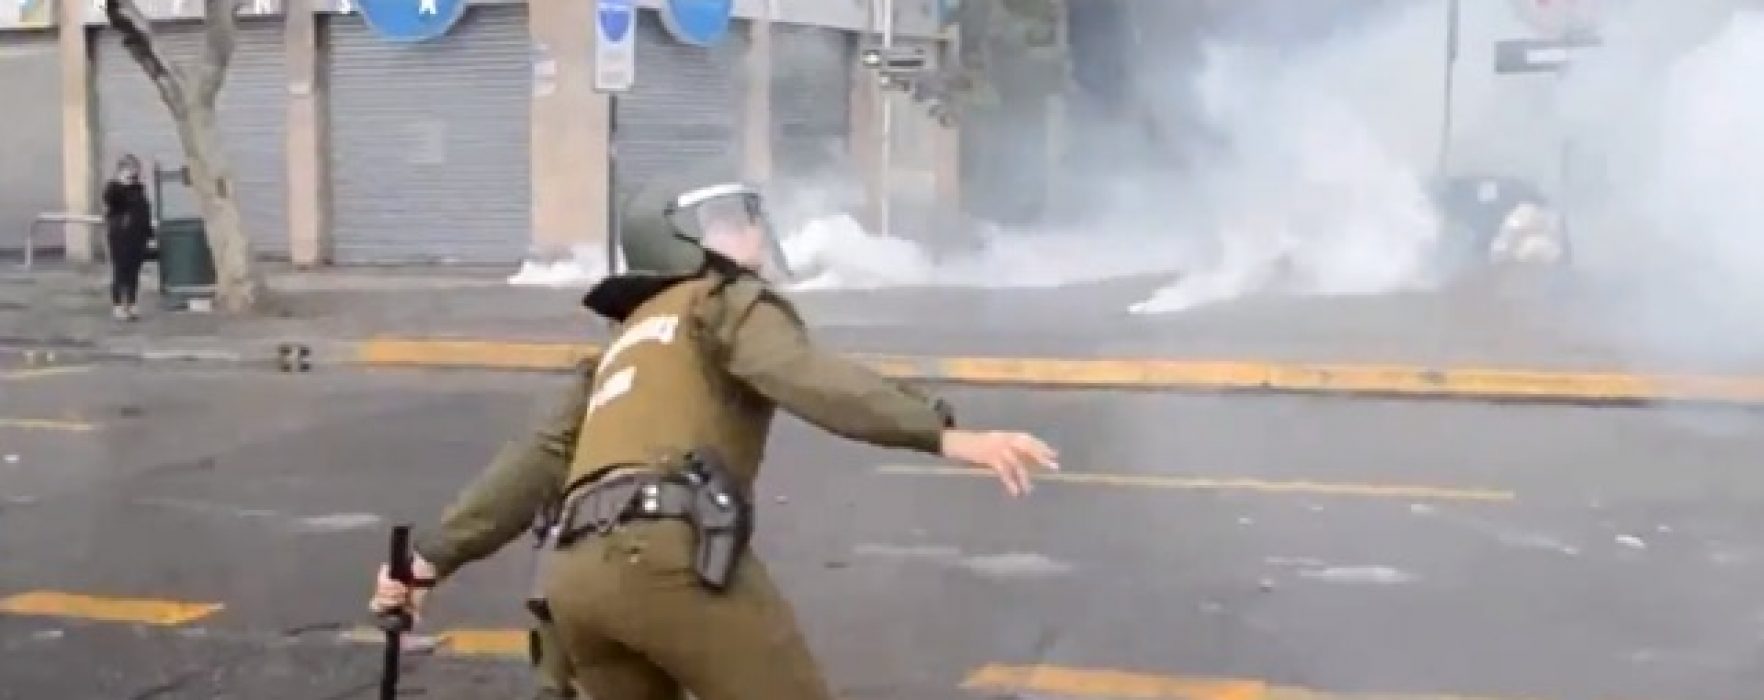 Chile: Policía vs. Estudiantes. Como es costumbre.